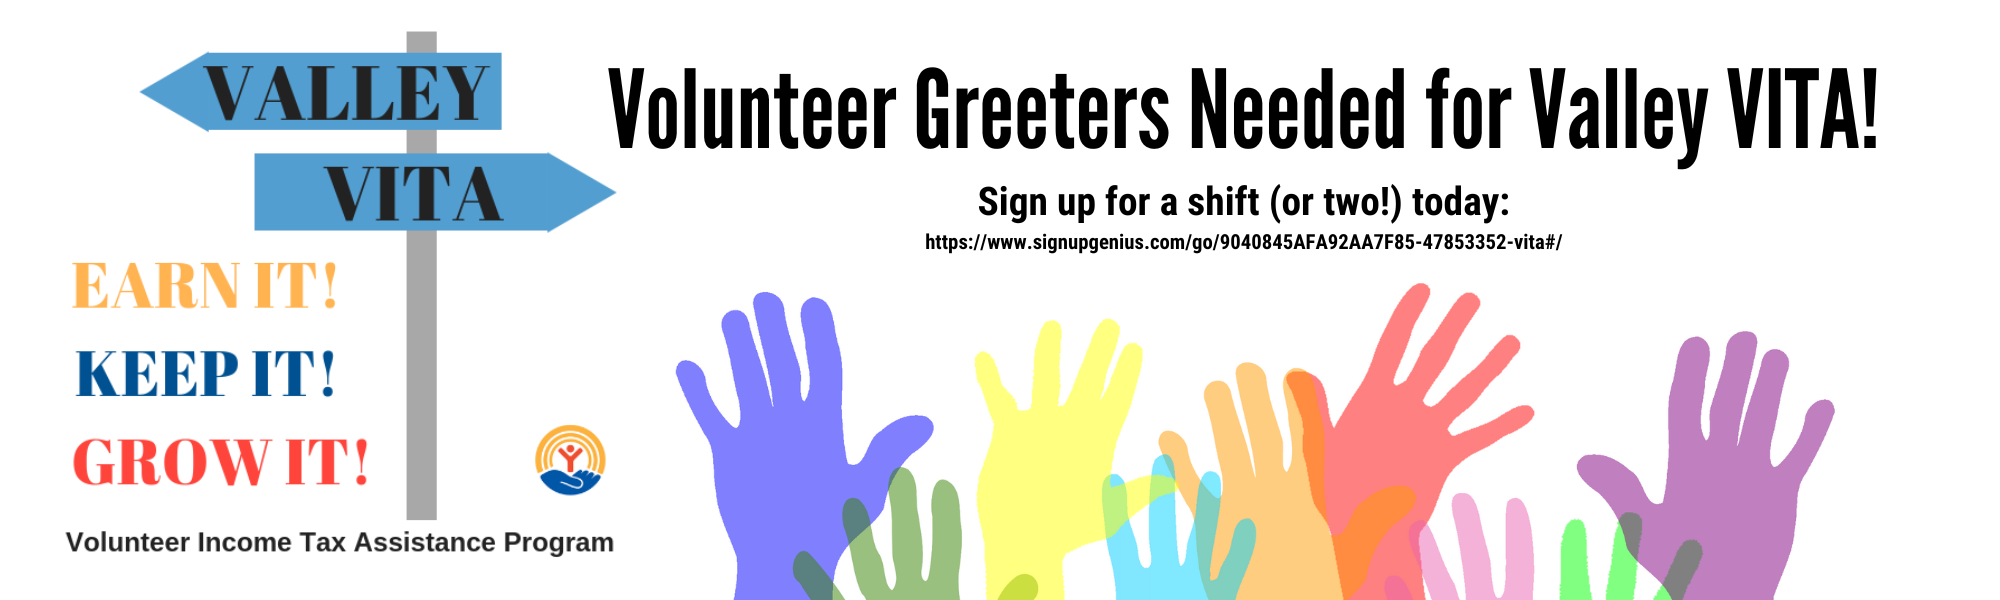 Volunteer Greeters Needed for Valley VITA!